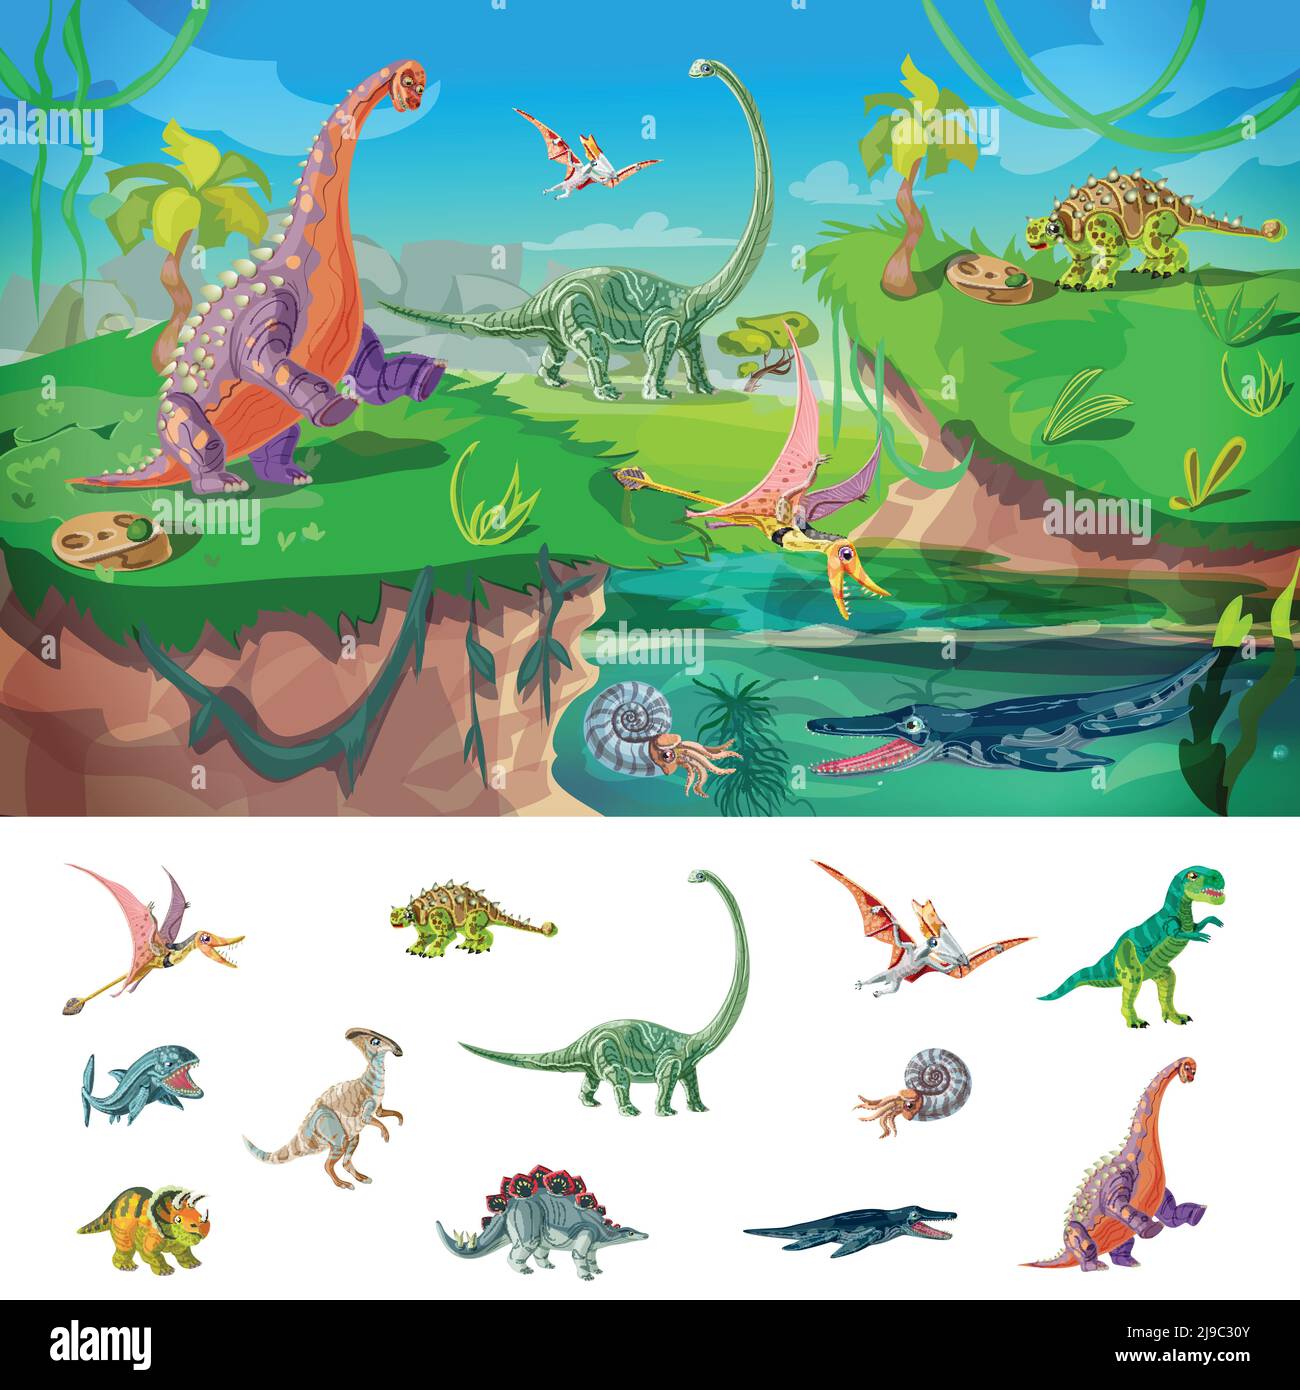 Animaux jurassic concept avec la faune et la conception d'oiseaux dinosaures et bêtes sous-marins illustration vectorielle isolée Illustration de Vecteur